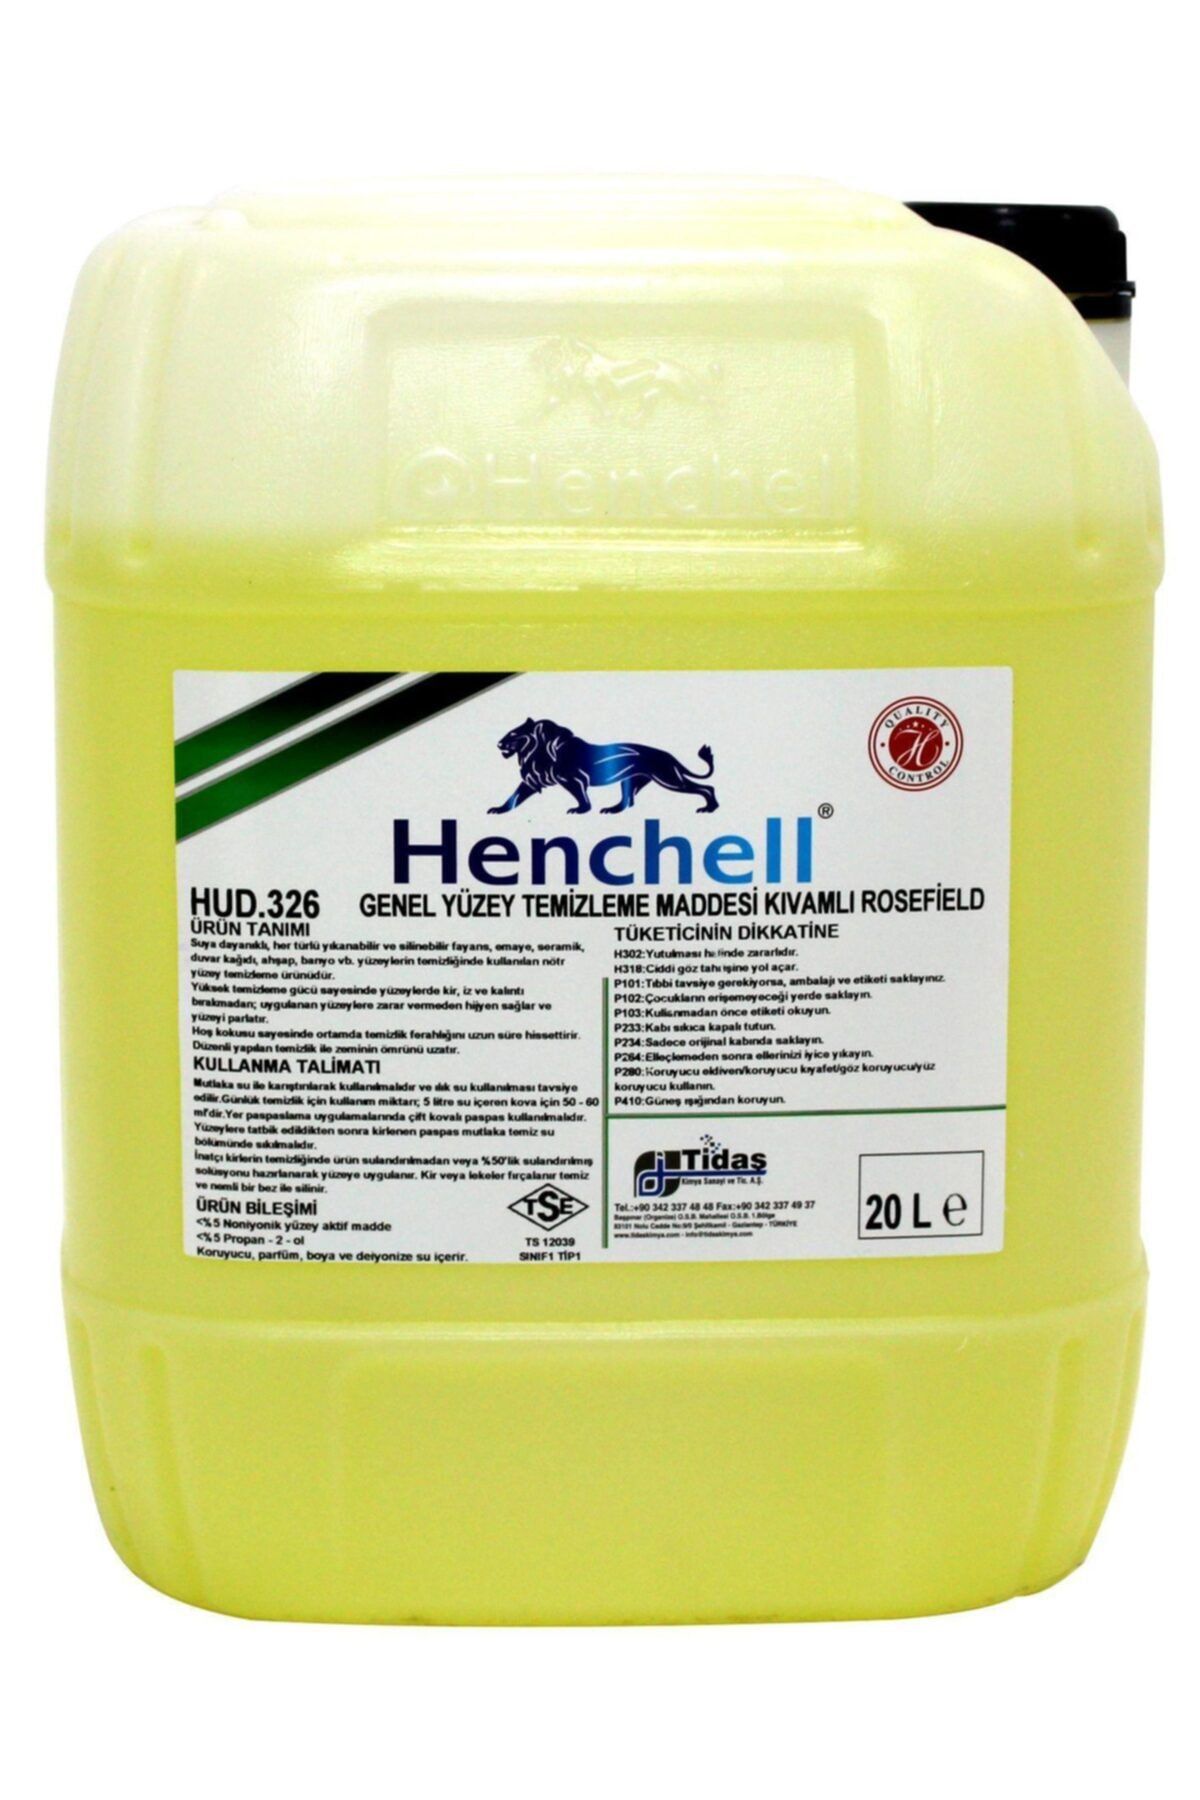 Henchell Genel Yüzey Temizleme Maddesi Ultra Rosefıeld 20kg